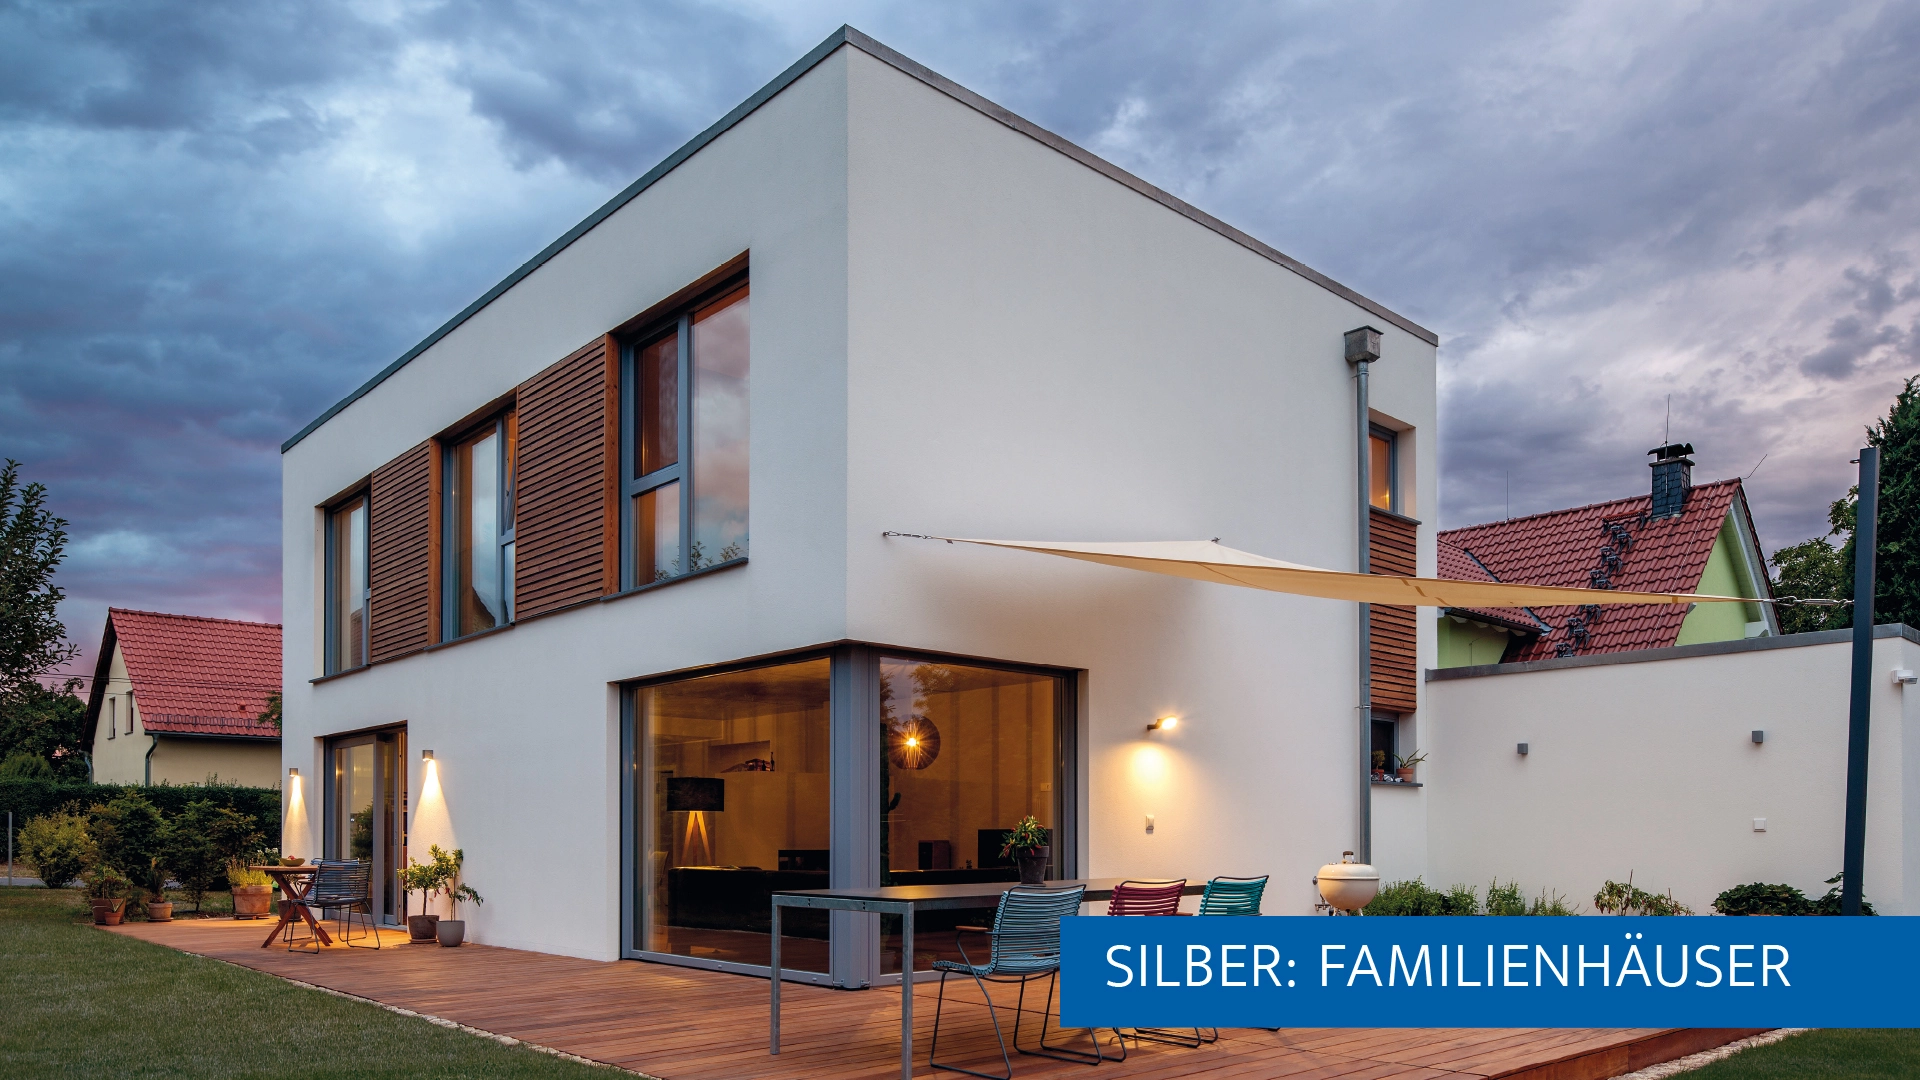 Das schlüsselfertige Einfamilienhaus im kubistischen Bauhausstil überzeugte die Leser. (Foto: BAUMEISTER-HAUS)